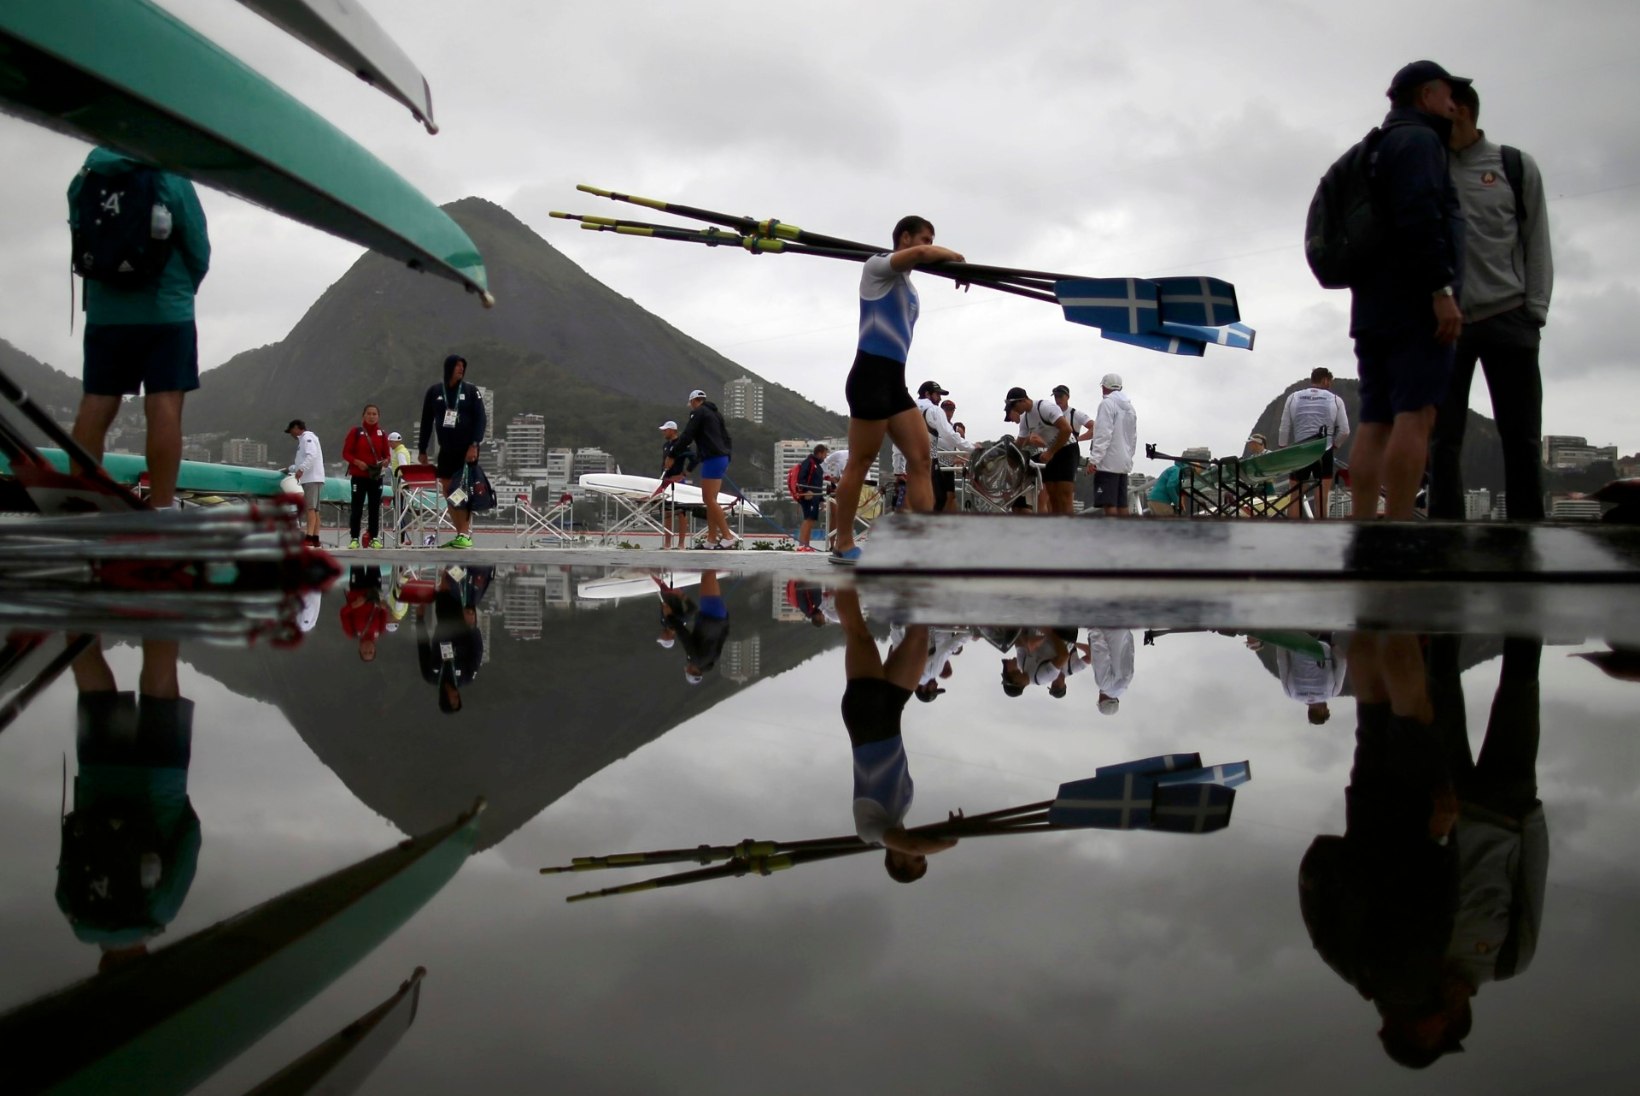 FOTOD | Vaata, milline ilm tõmbas sõudjate tänasele olümpiafinaalile kriipsu peale